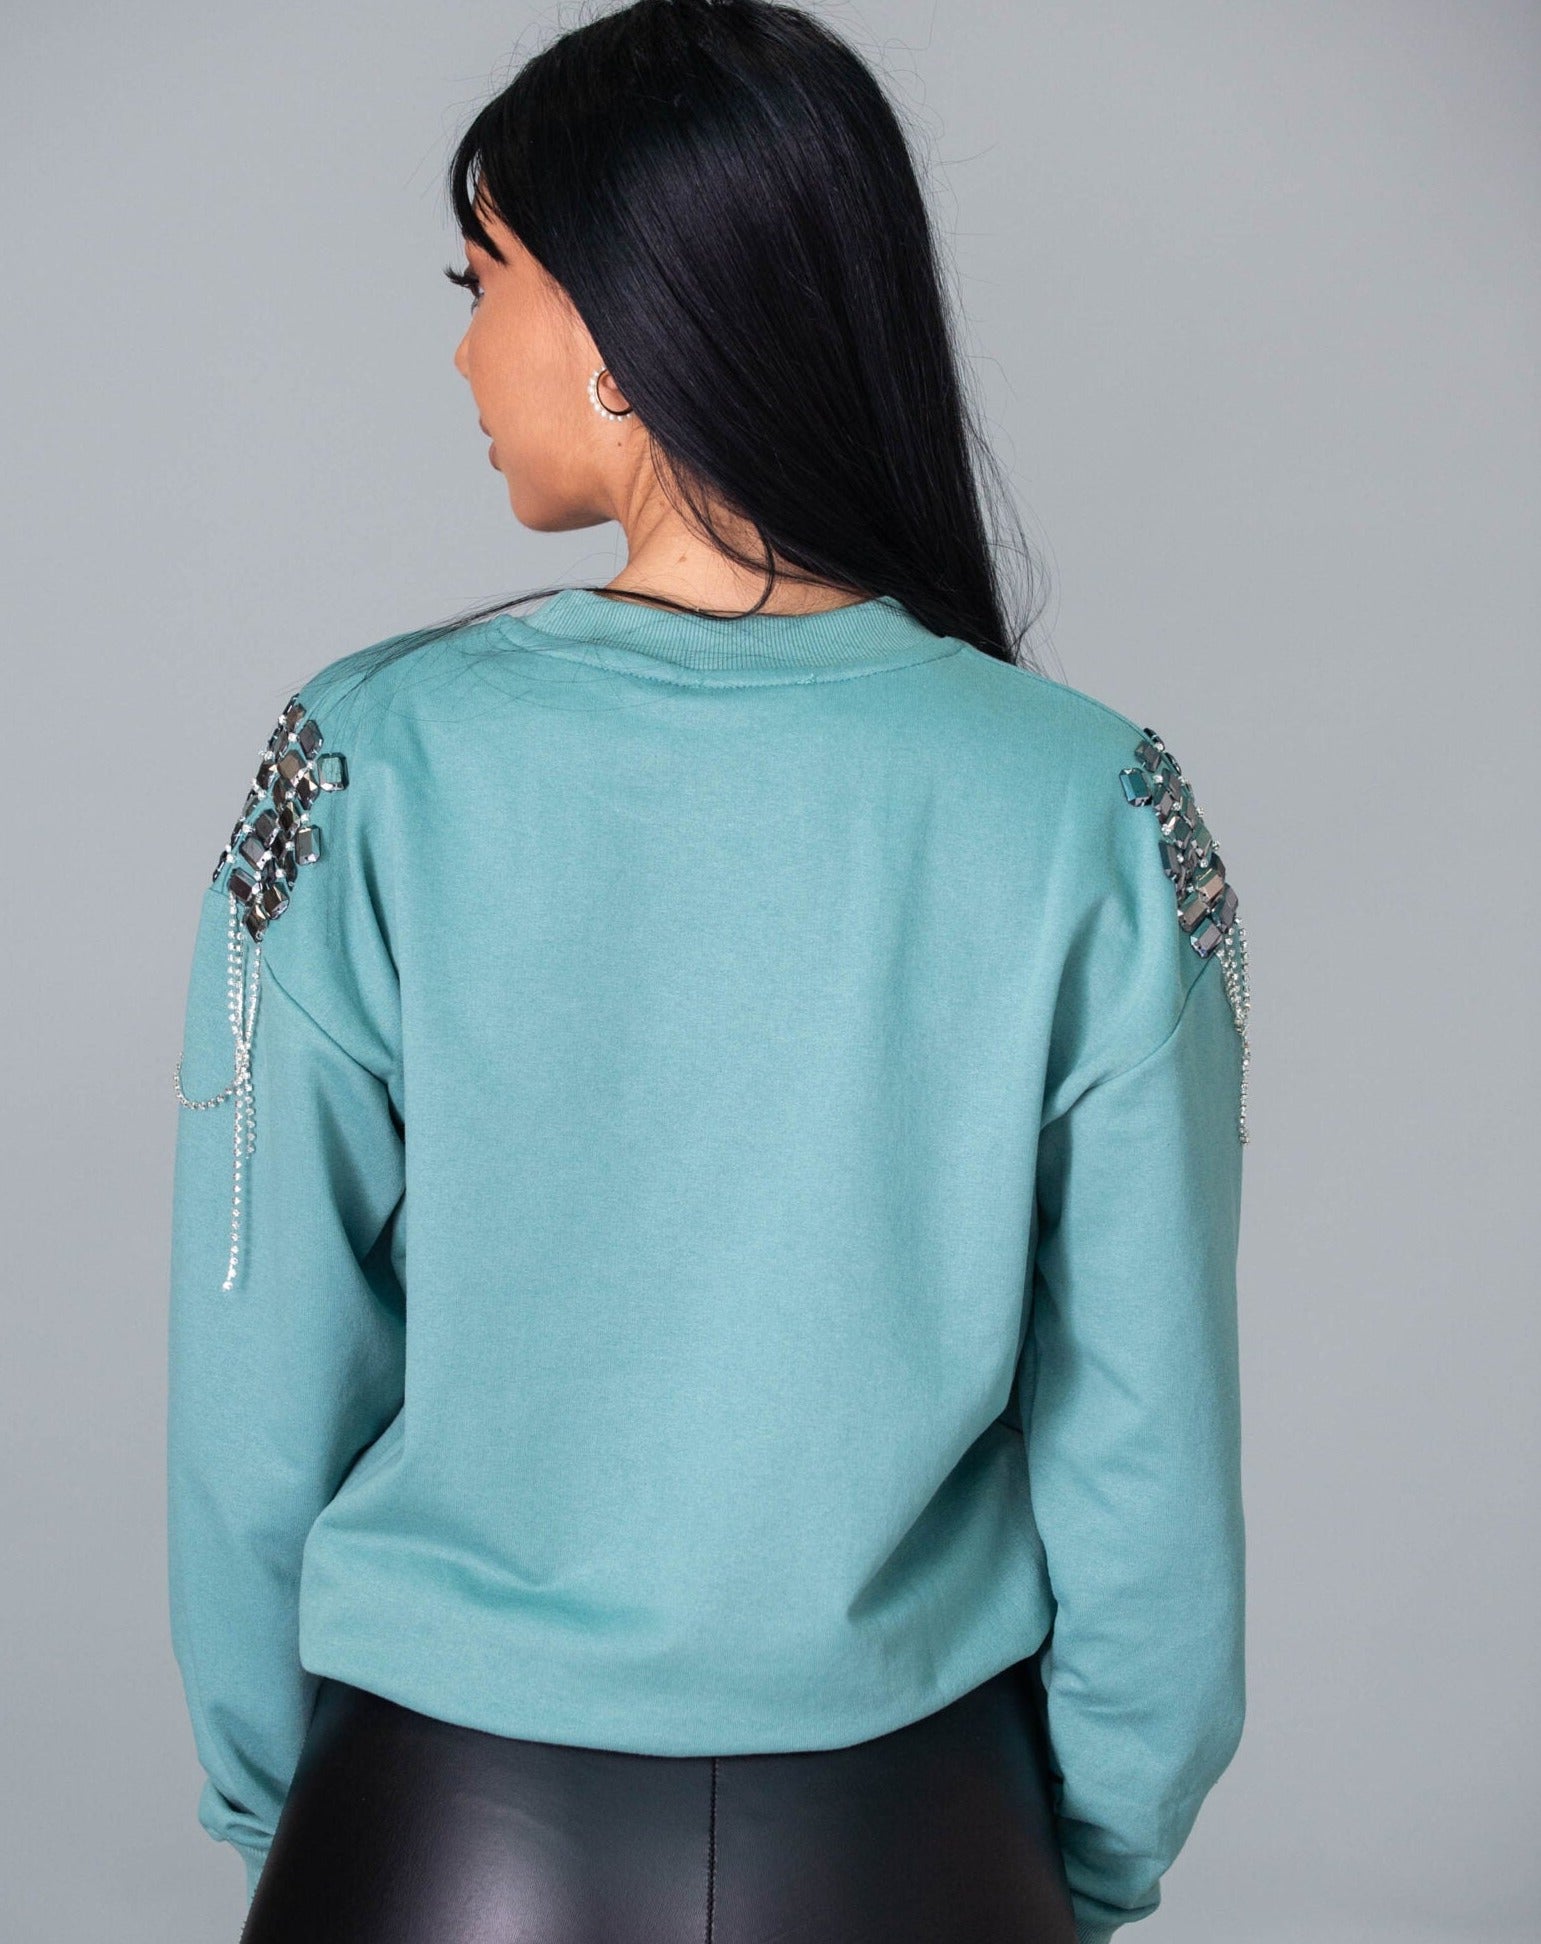 Дамска блуза DELVINS  https://bvseductive.com/products/дамска-блуза-delvins-2  100 % памук модерна дамска блуза в цвят мента изработен от мека и приятна материя с ефектни камъни на раменете бъдете изключителни с блуза&nbsp;DELVINS